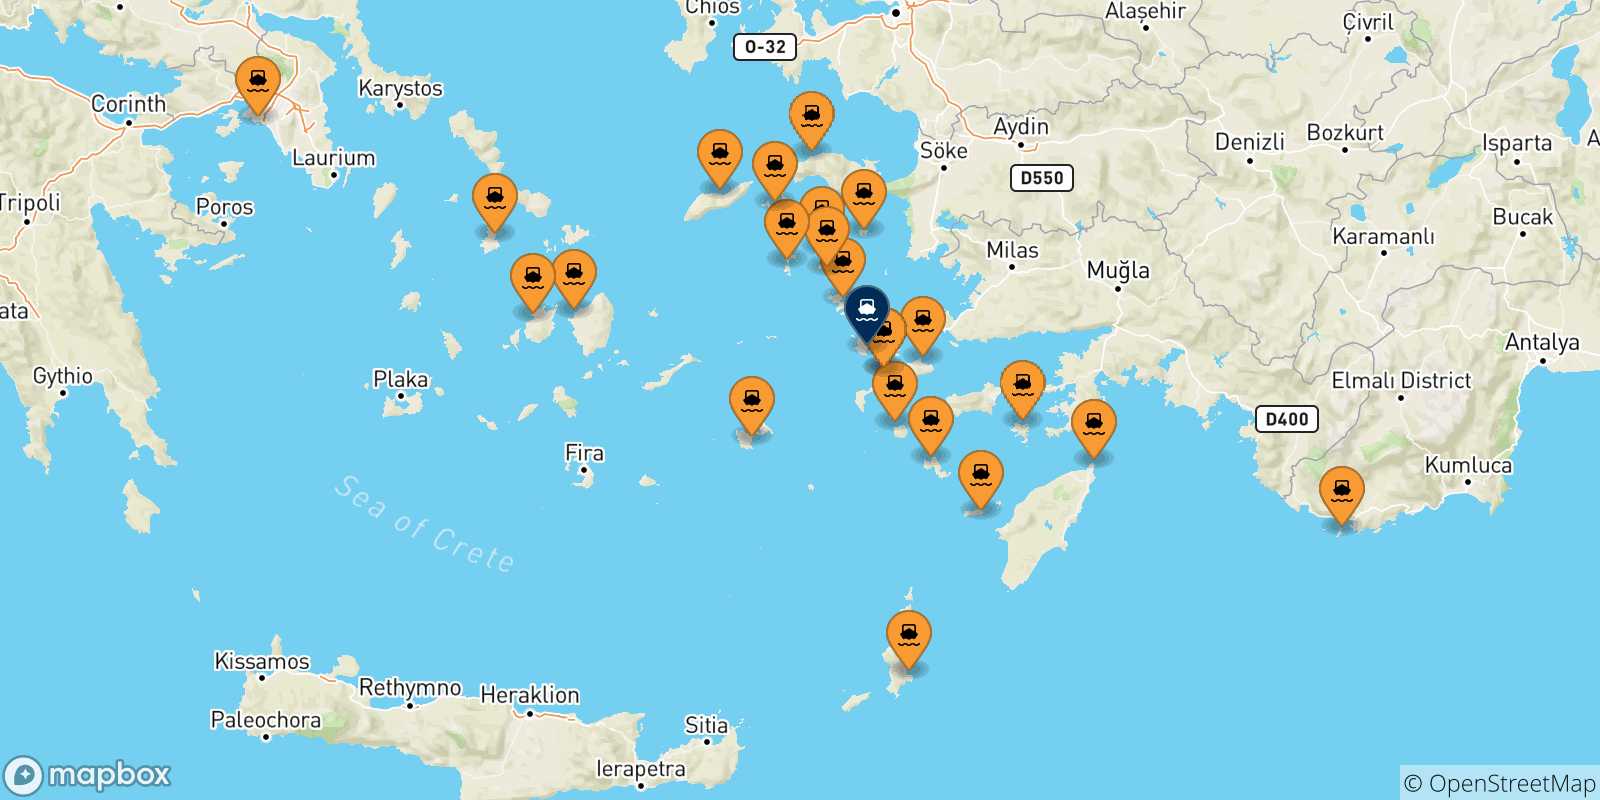 Mappa delle possibili rotte tra la Grecia e Kalymnos